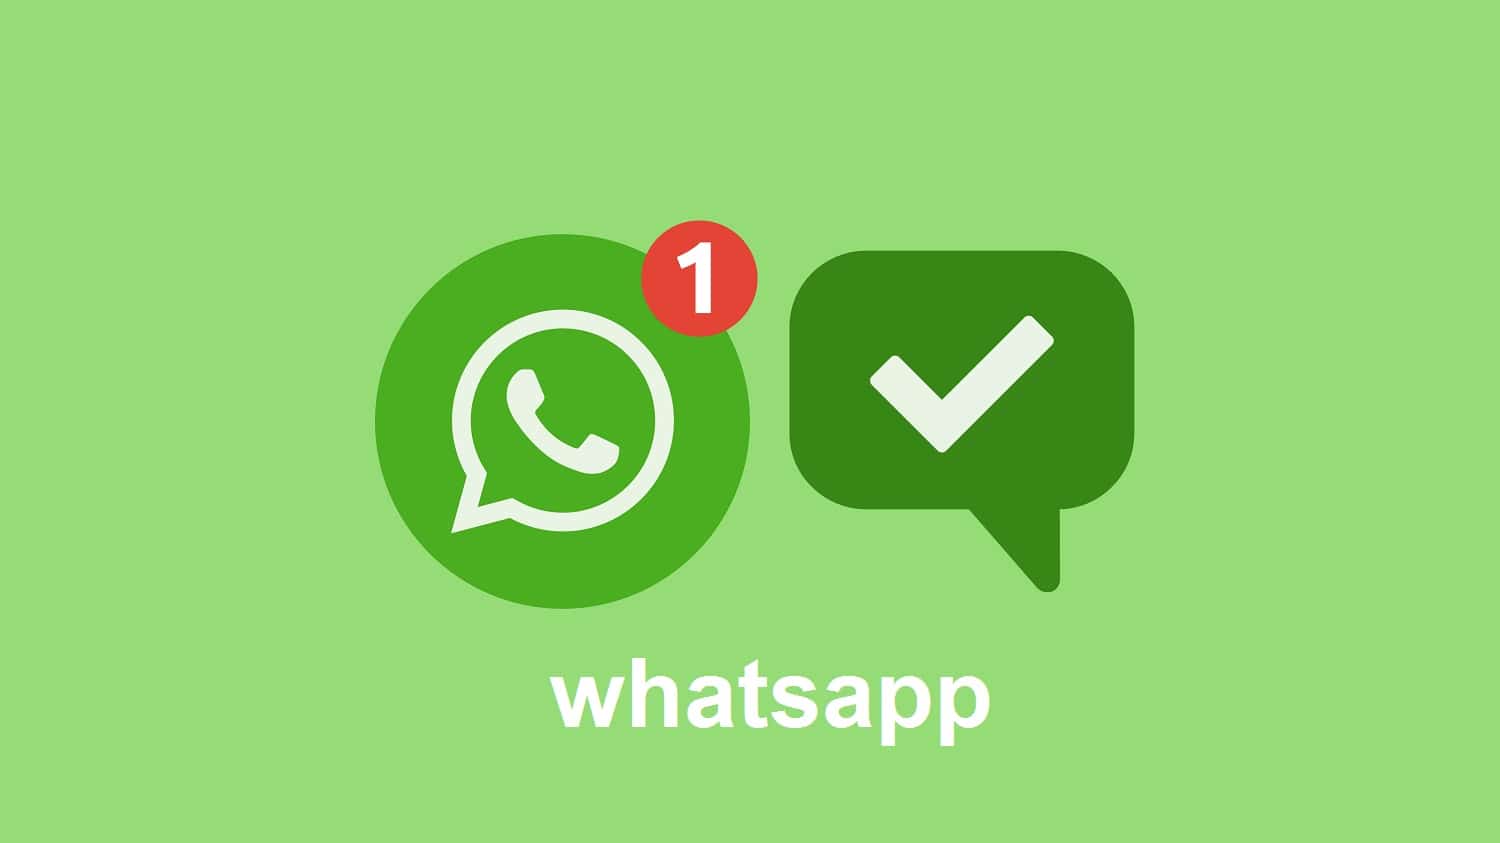 إبداع جديد من واتساب WhatsApp بعد اختباره للميزة التي انتظرها ملايين المستخدمين